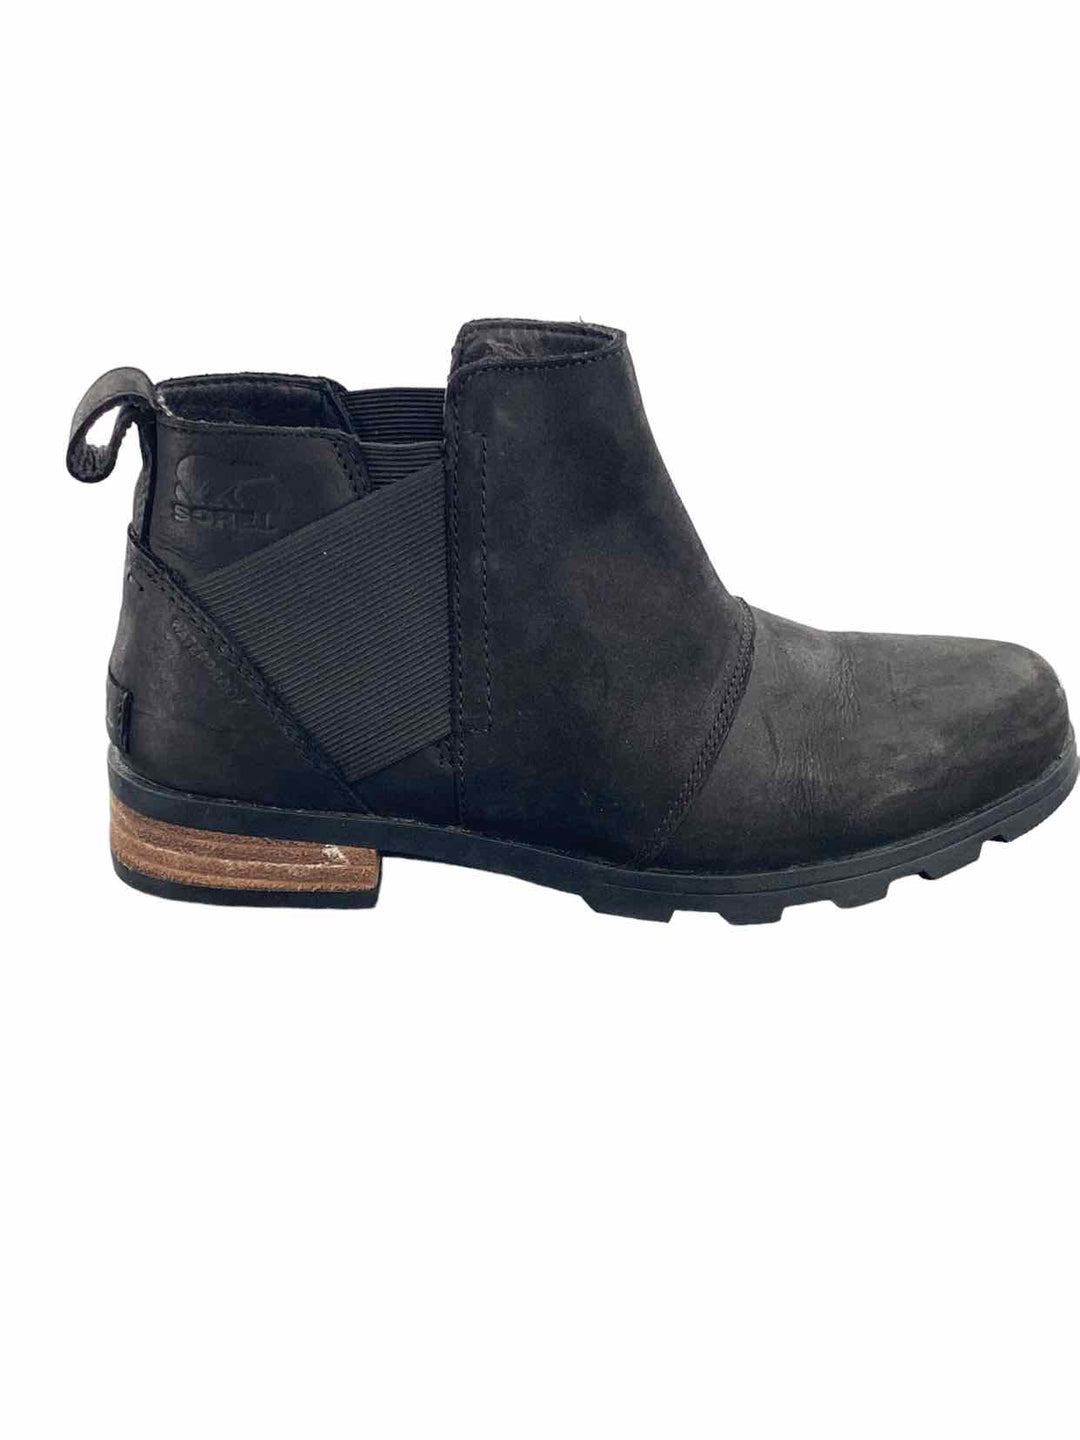 Sorel Shoe Size 7 Black Boots(Ankle)